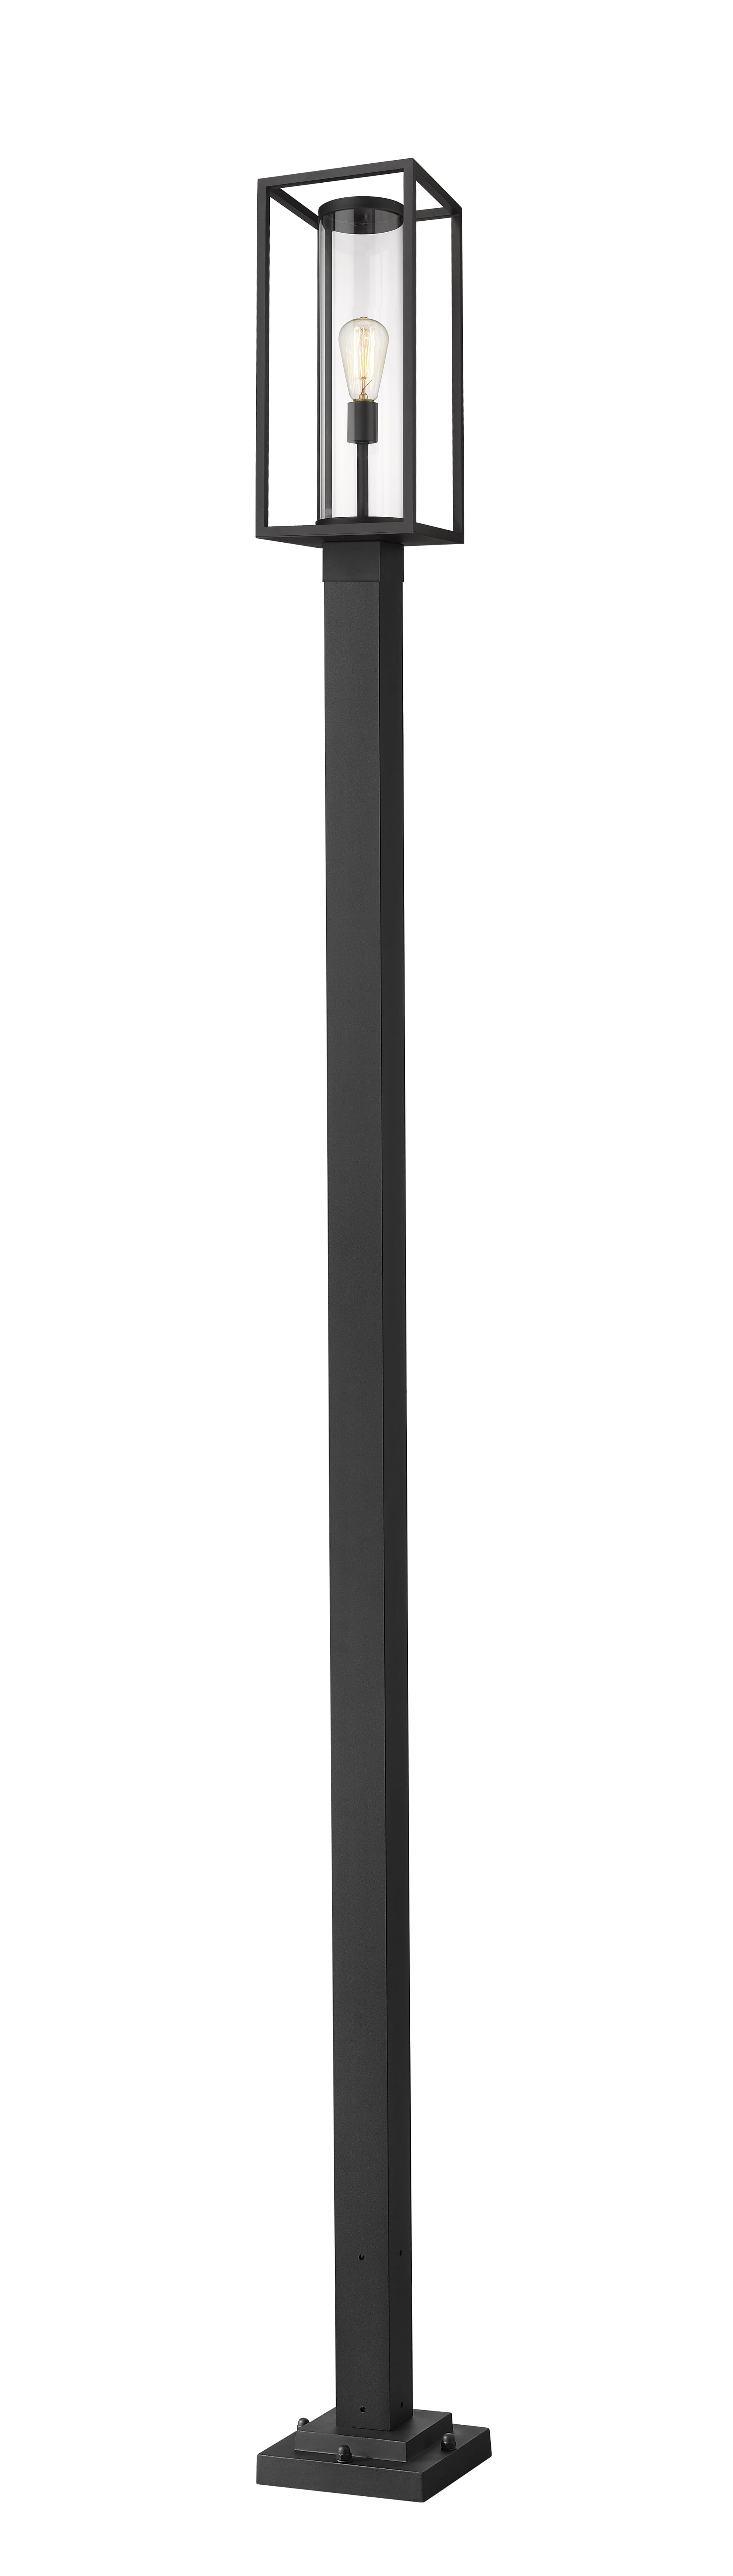 Dunbroch 1-Light Outdoor Post Mounted Fixture Light In Black